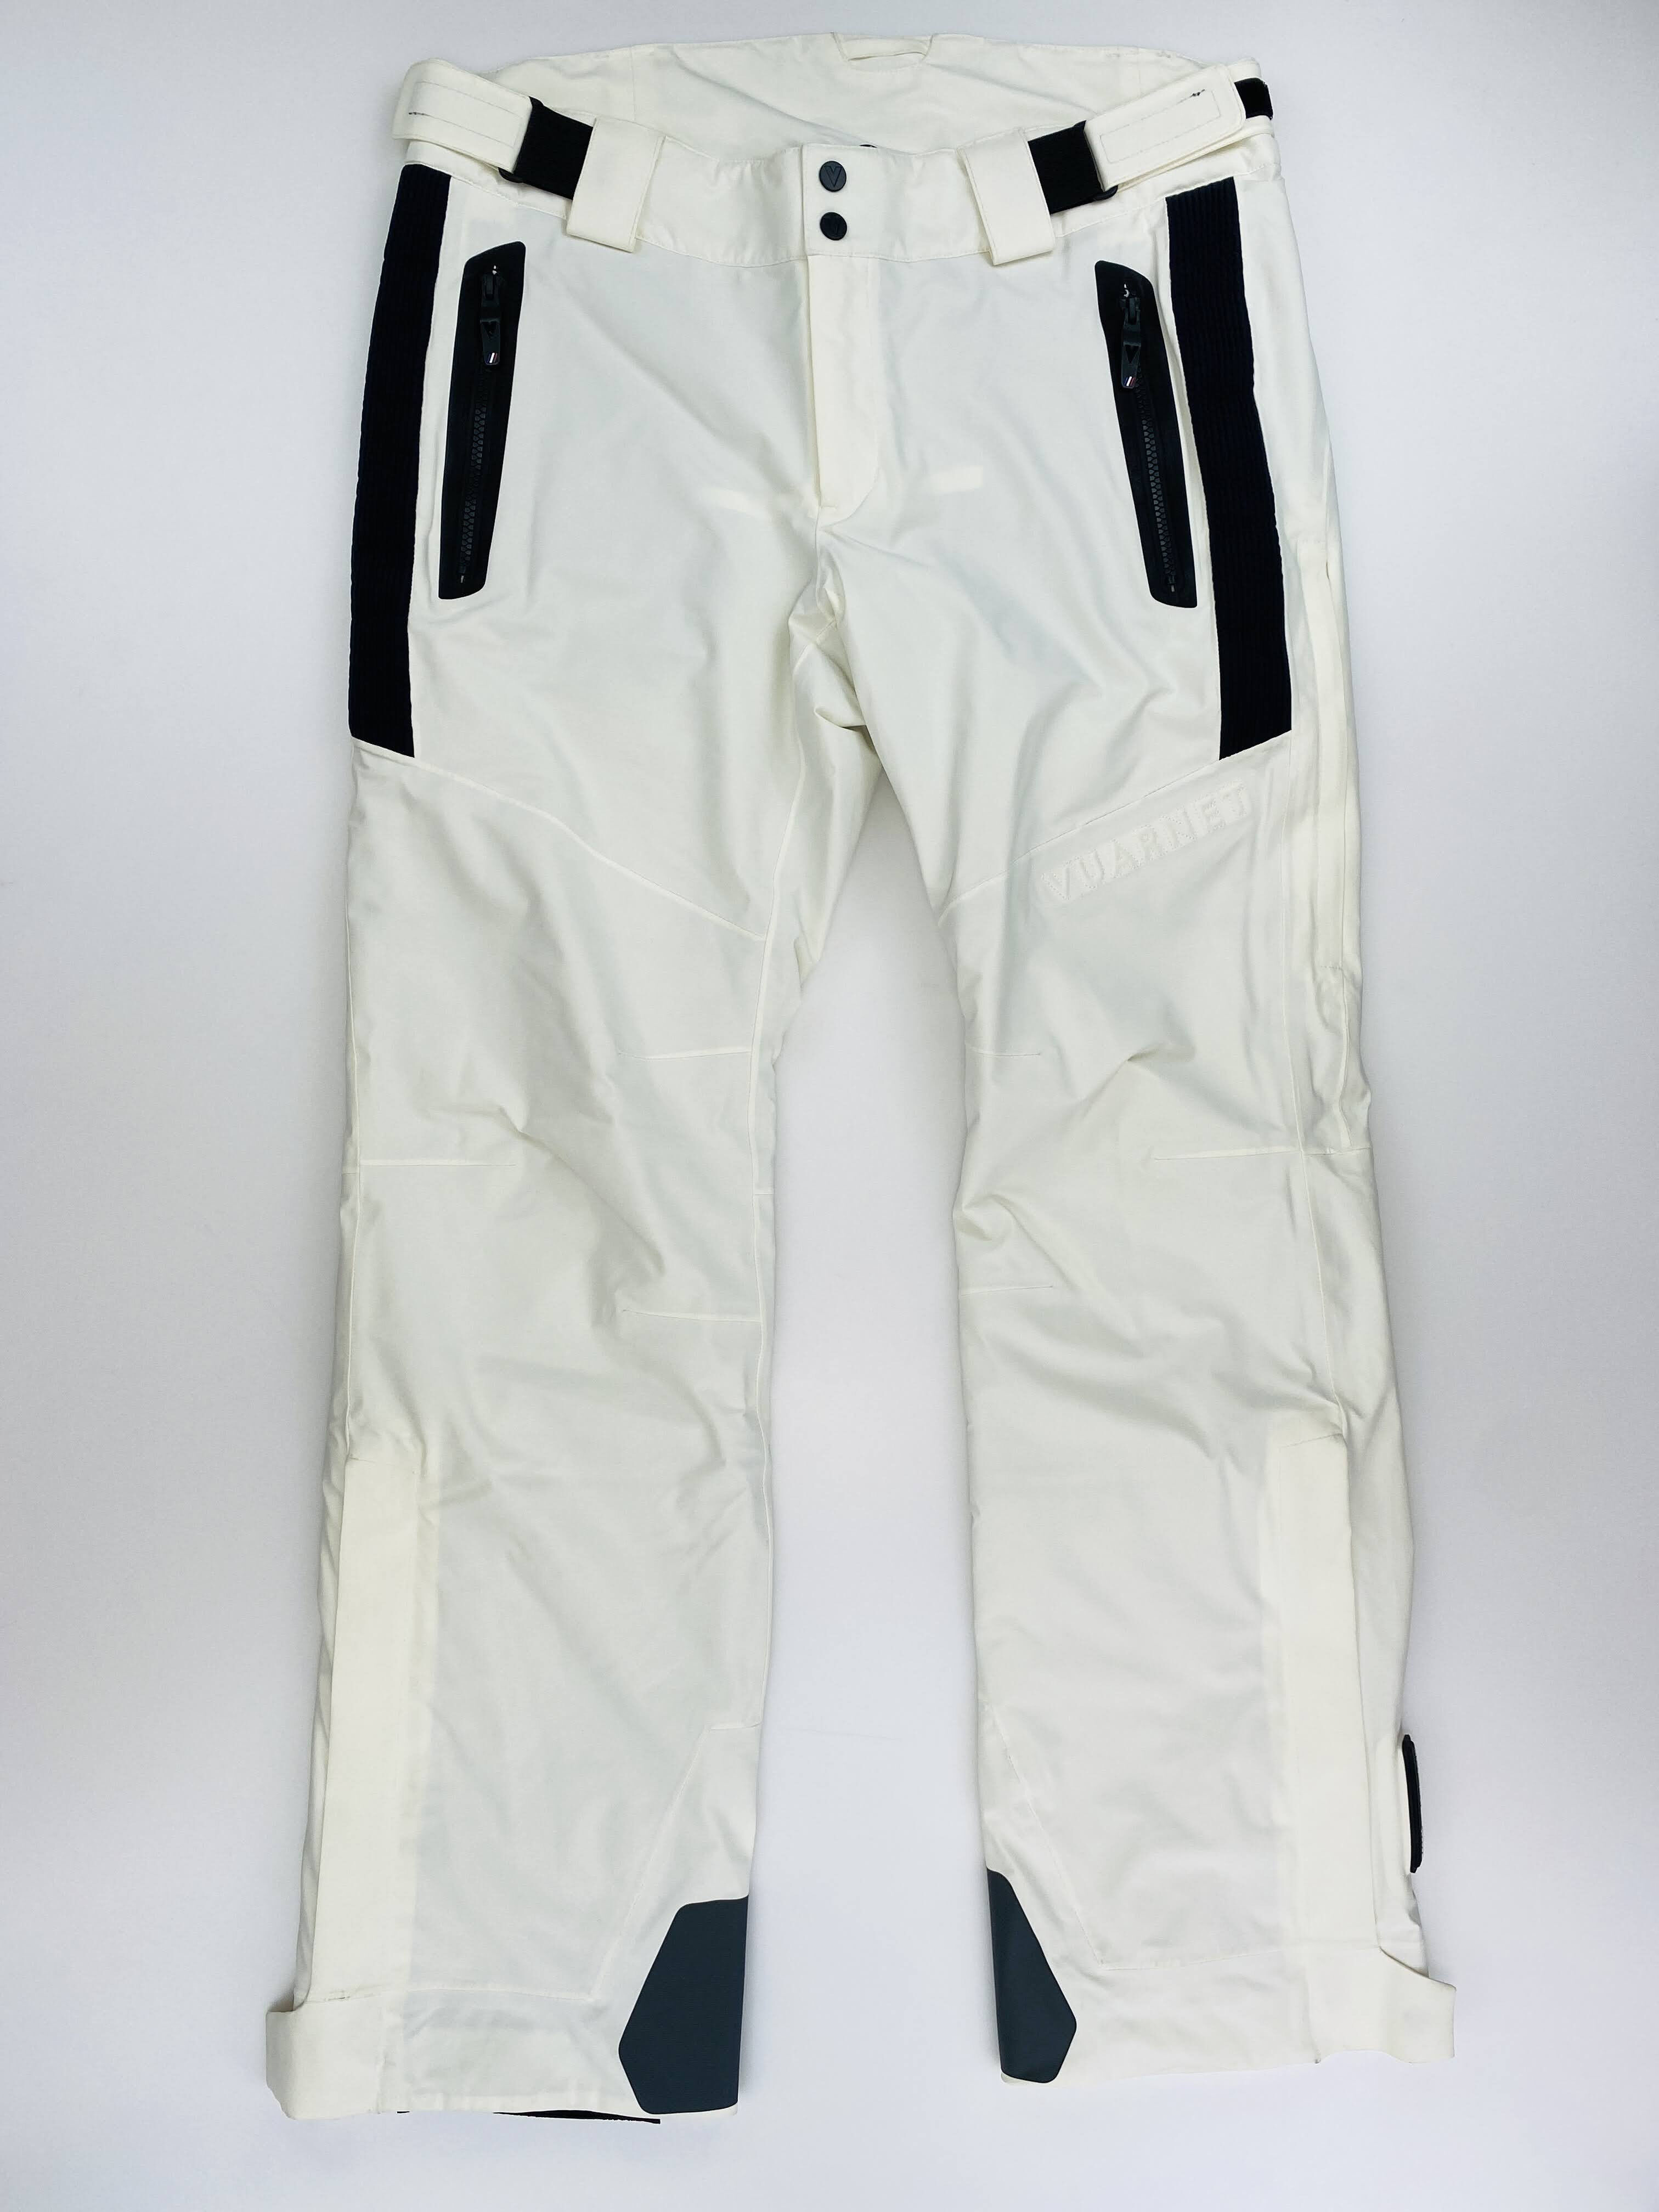 Vuarnet M'S Burnaby Pant - Seconde main Pantalon ski homme - Blanc - L | Hardloop